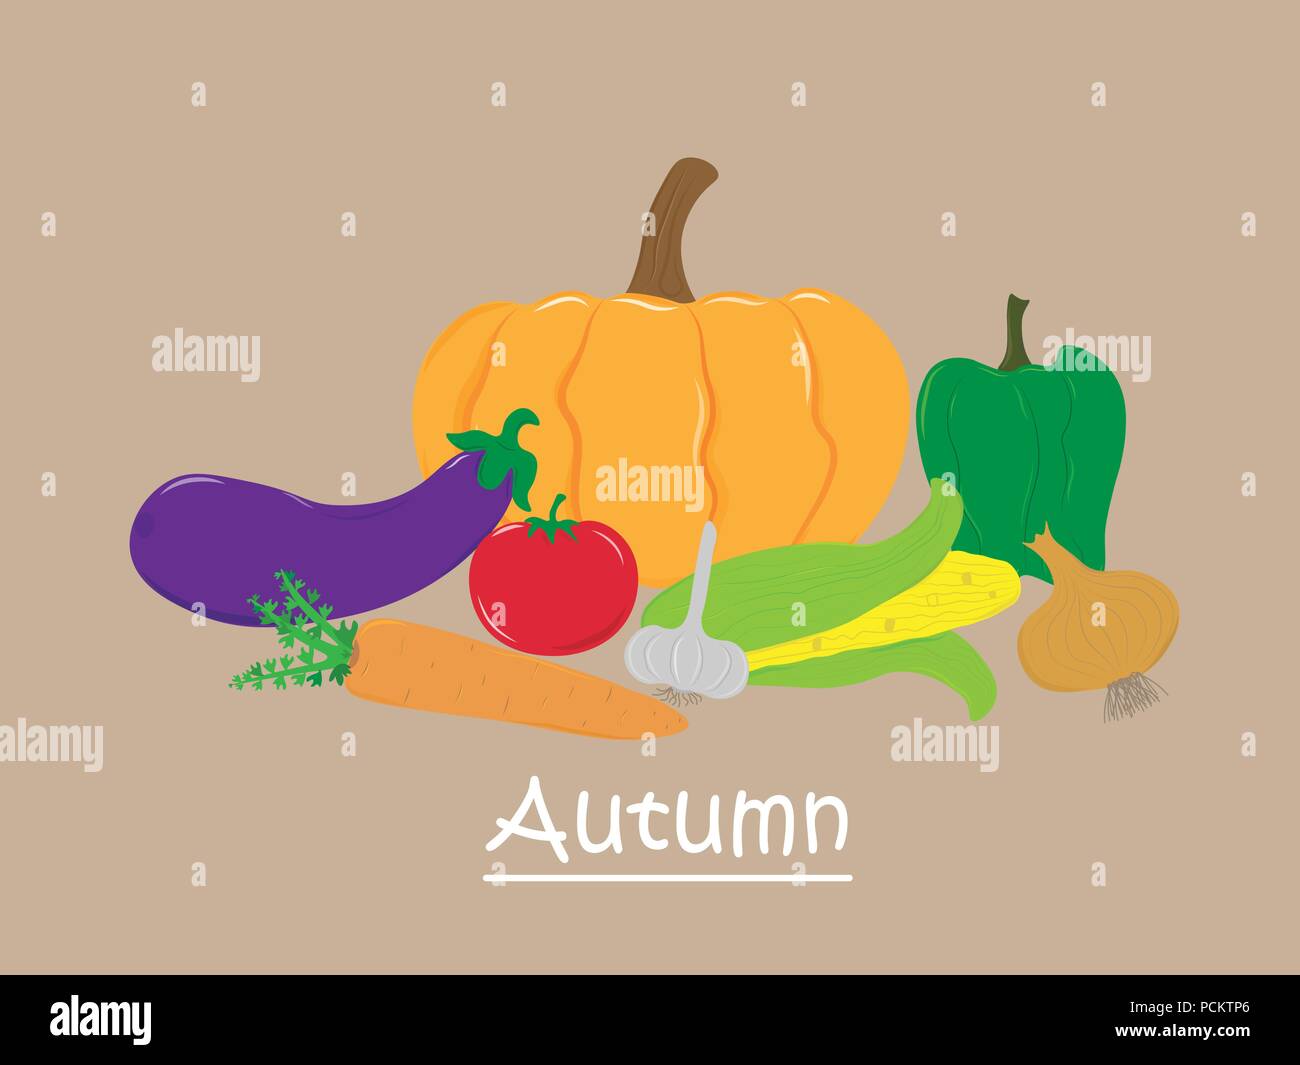 Kalender Karte Herbst Gemüse. Gute Ernte. Thanksgiving Day. Vegetarisches Essen. Vector EPS 10. Stock Vektor